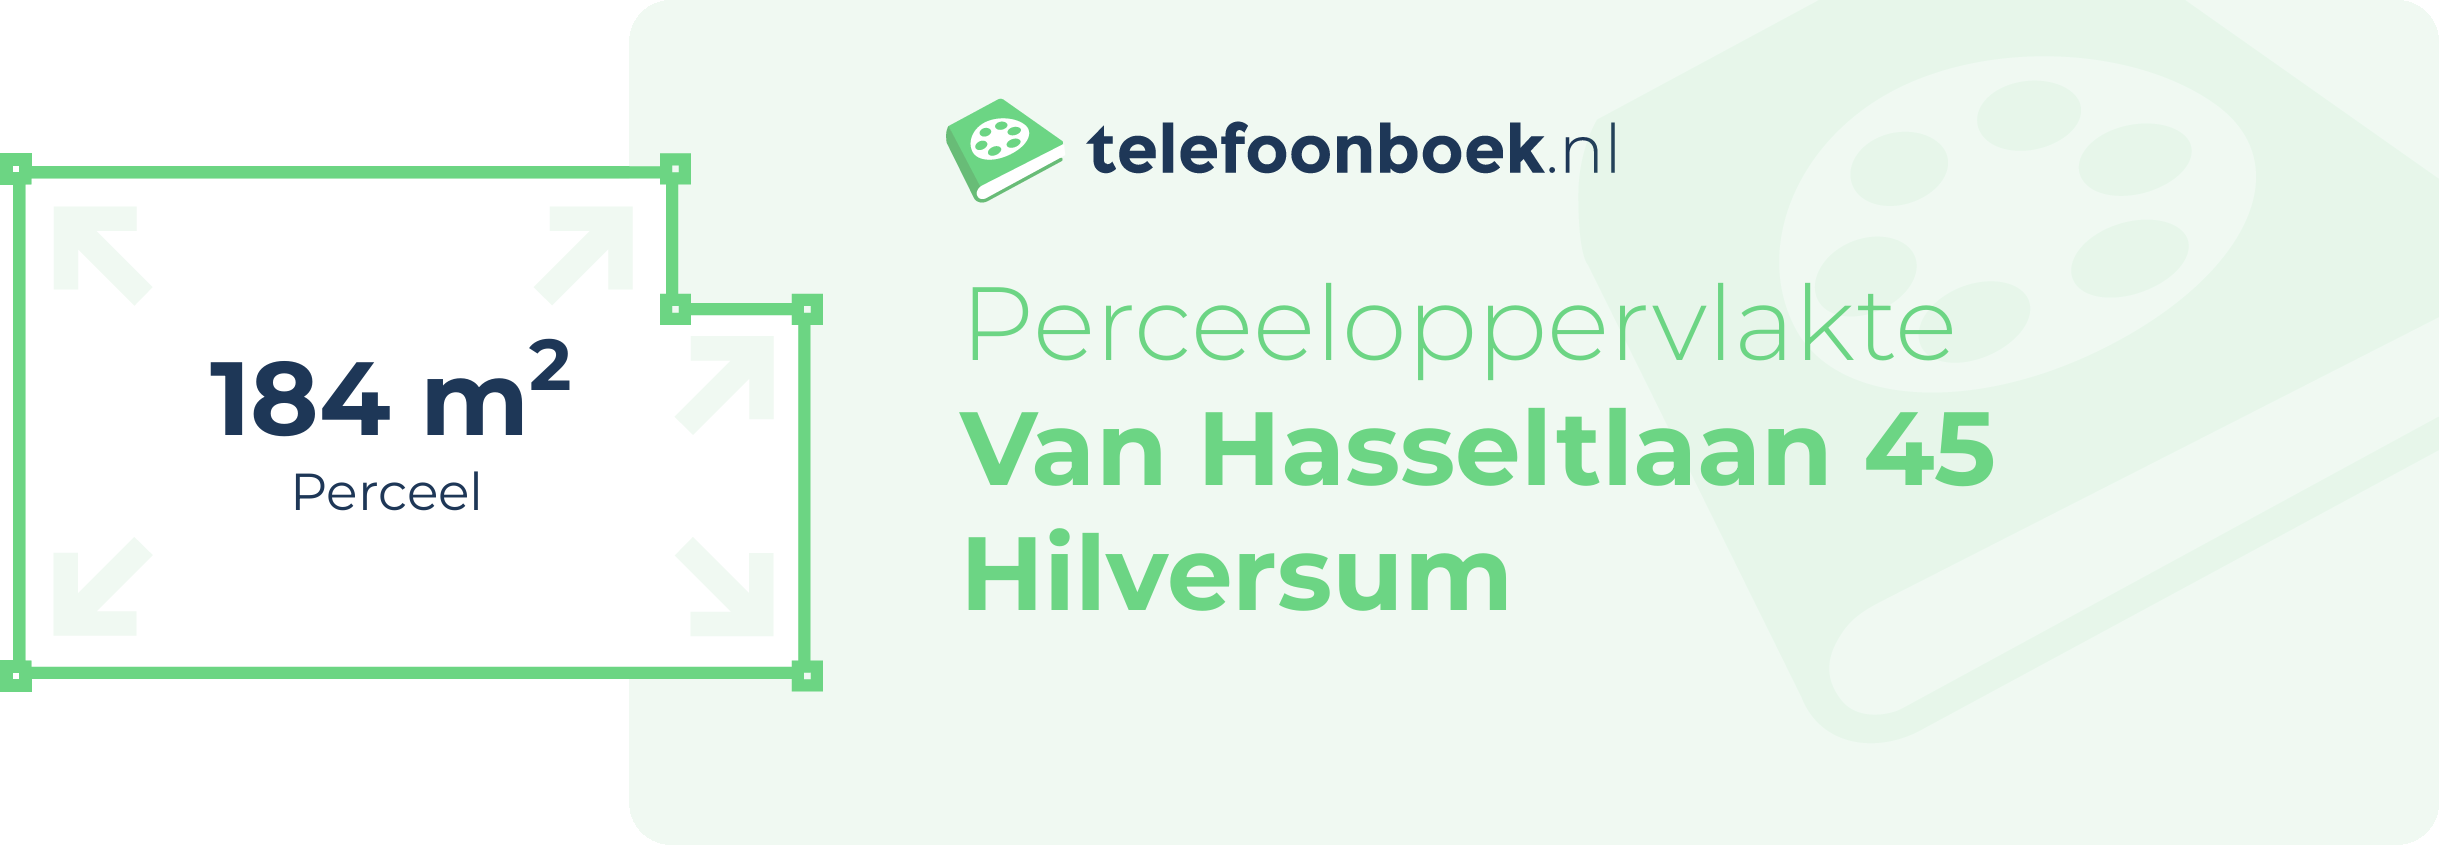 Perceeloppervlakte Van Hasseltlaan 45 Hilversum